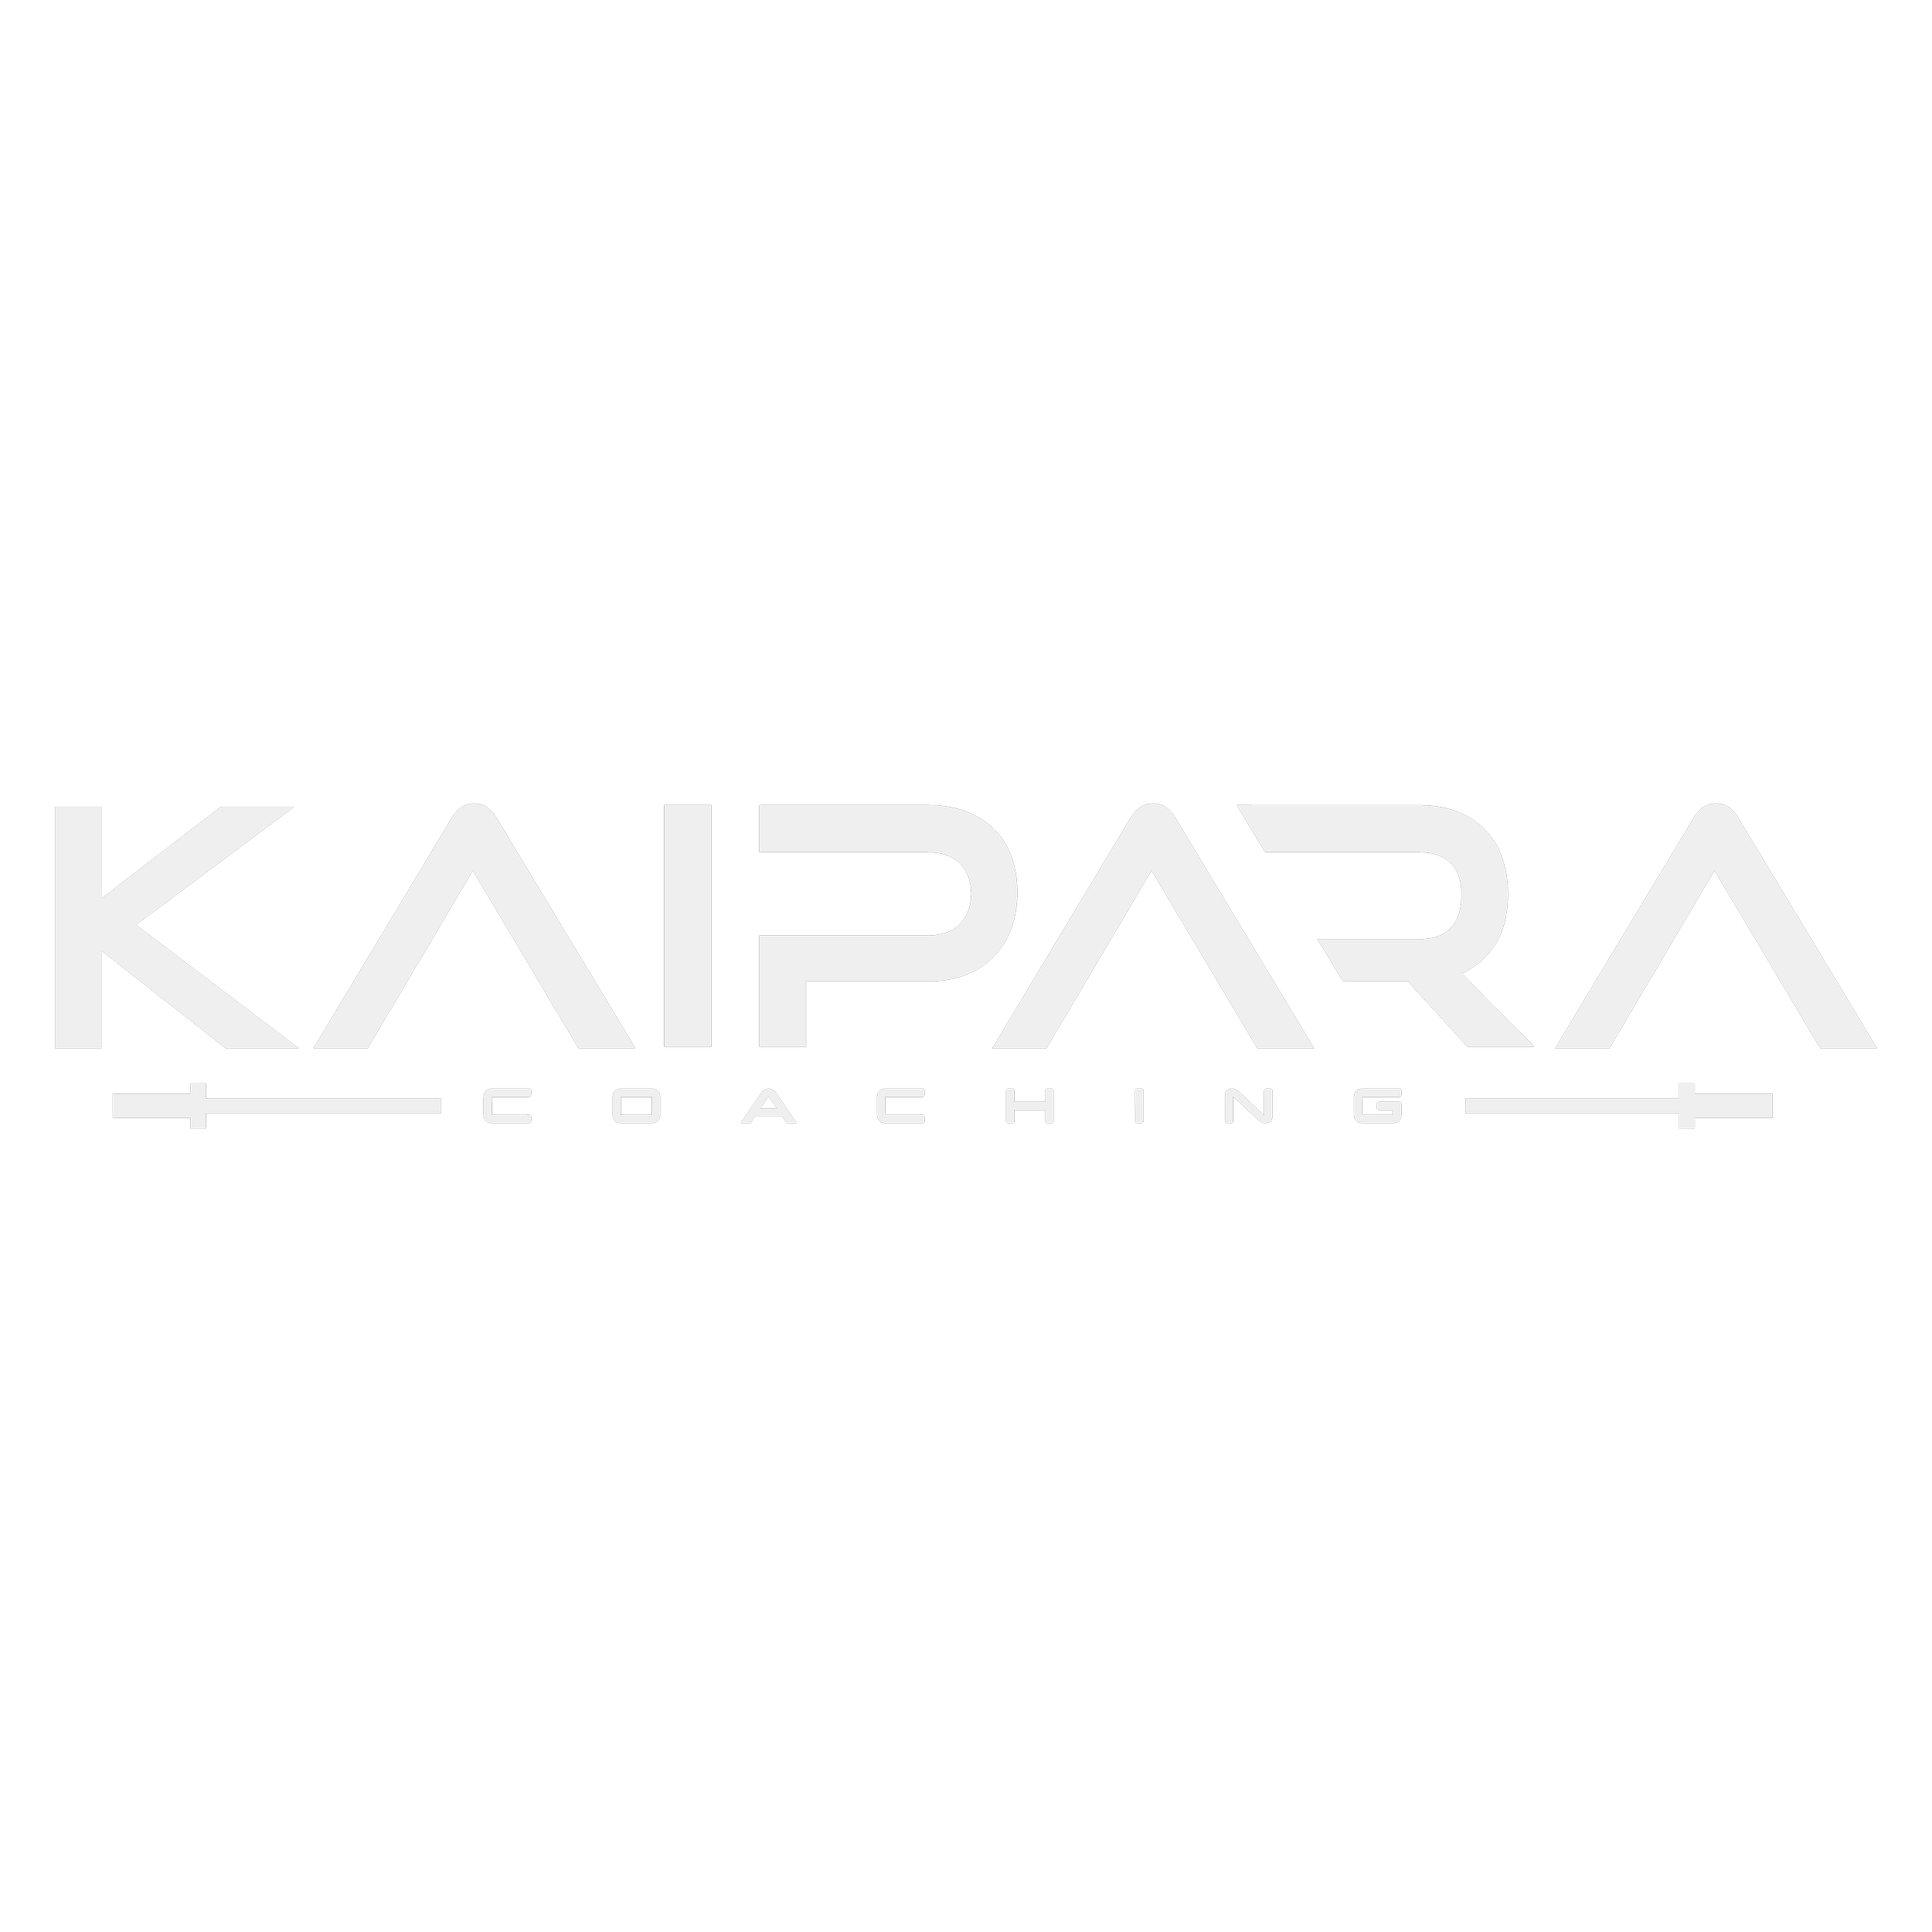 Kaipara Coaching